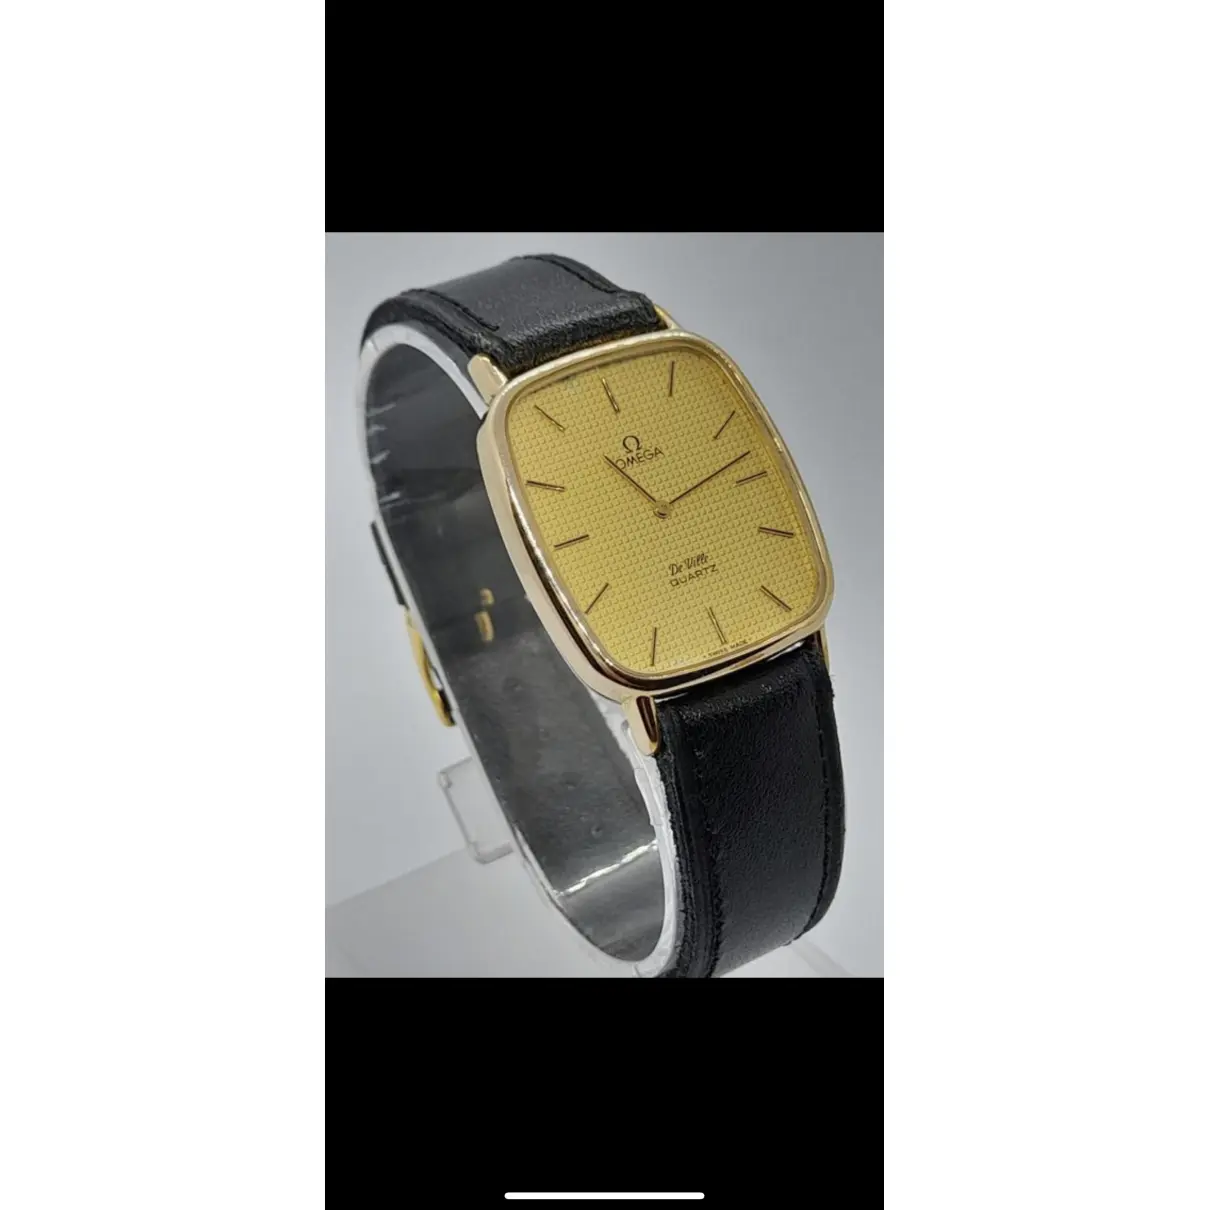 Buy Omega De Ville watch online - Vintage